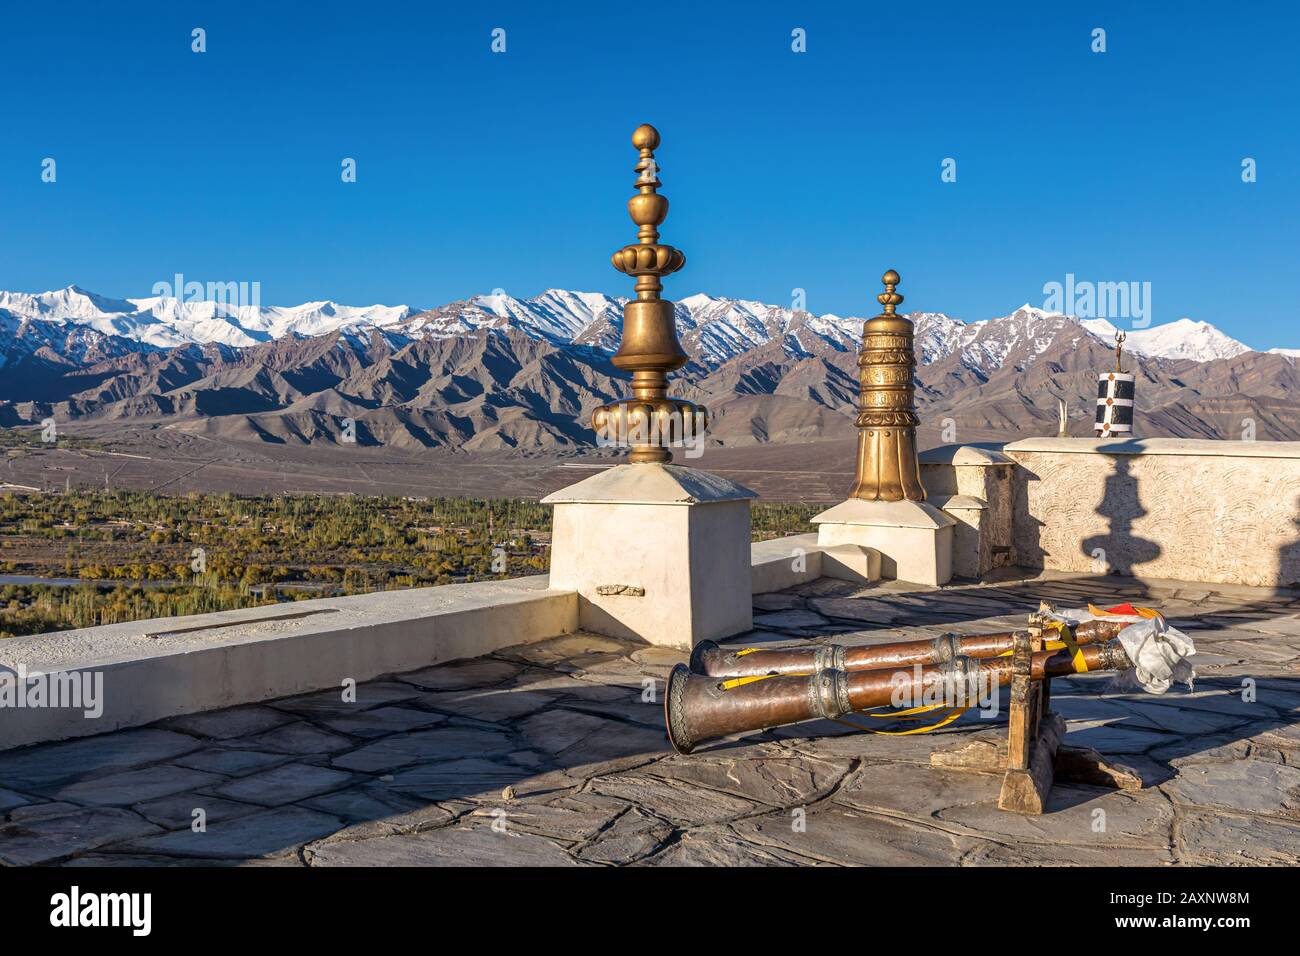 Cornes tibétaines au monastère de Thikse (Thiksay Gompa), au Ladakh, au Cachemire, en Inde Banque D'Images